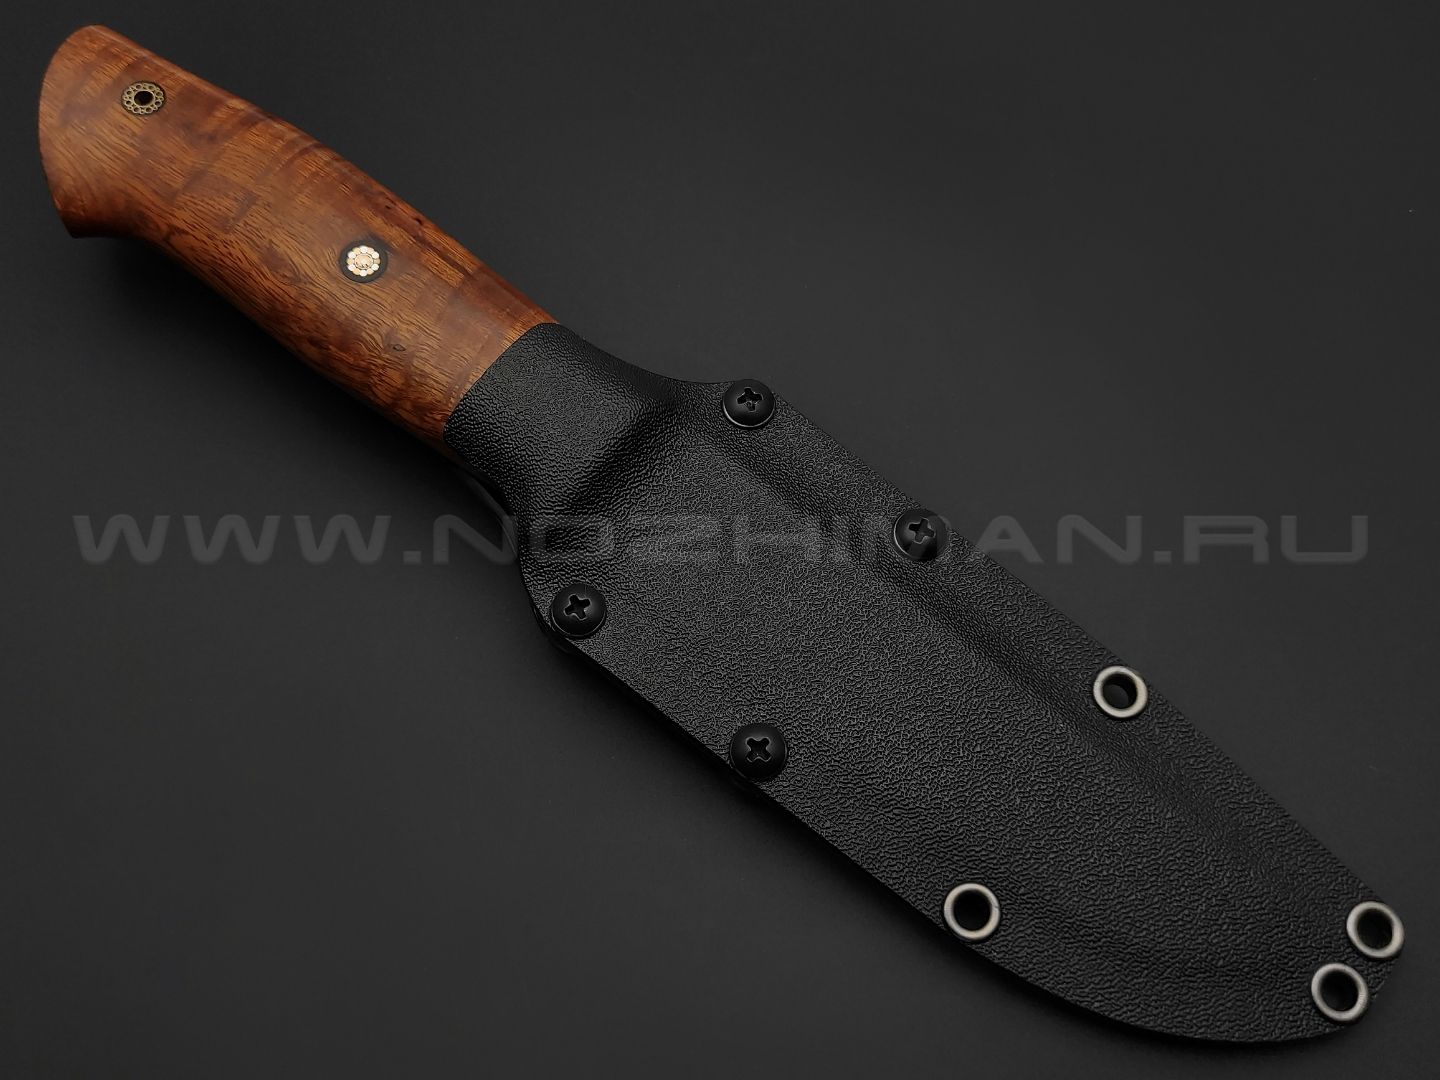 Волчий Век нож Слон Custom сталь M390 WA сатин, рукоять айронвуд, латунь, мозаичные пины